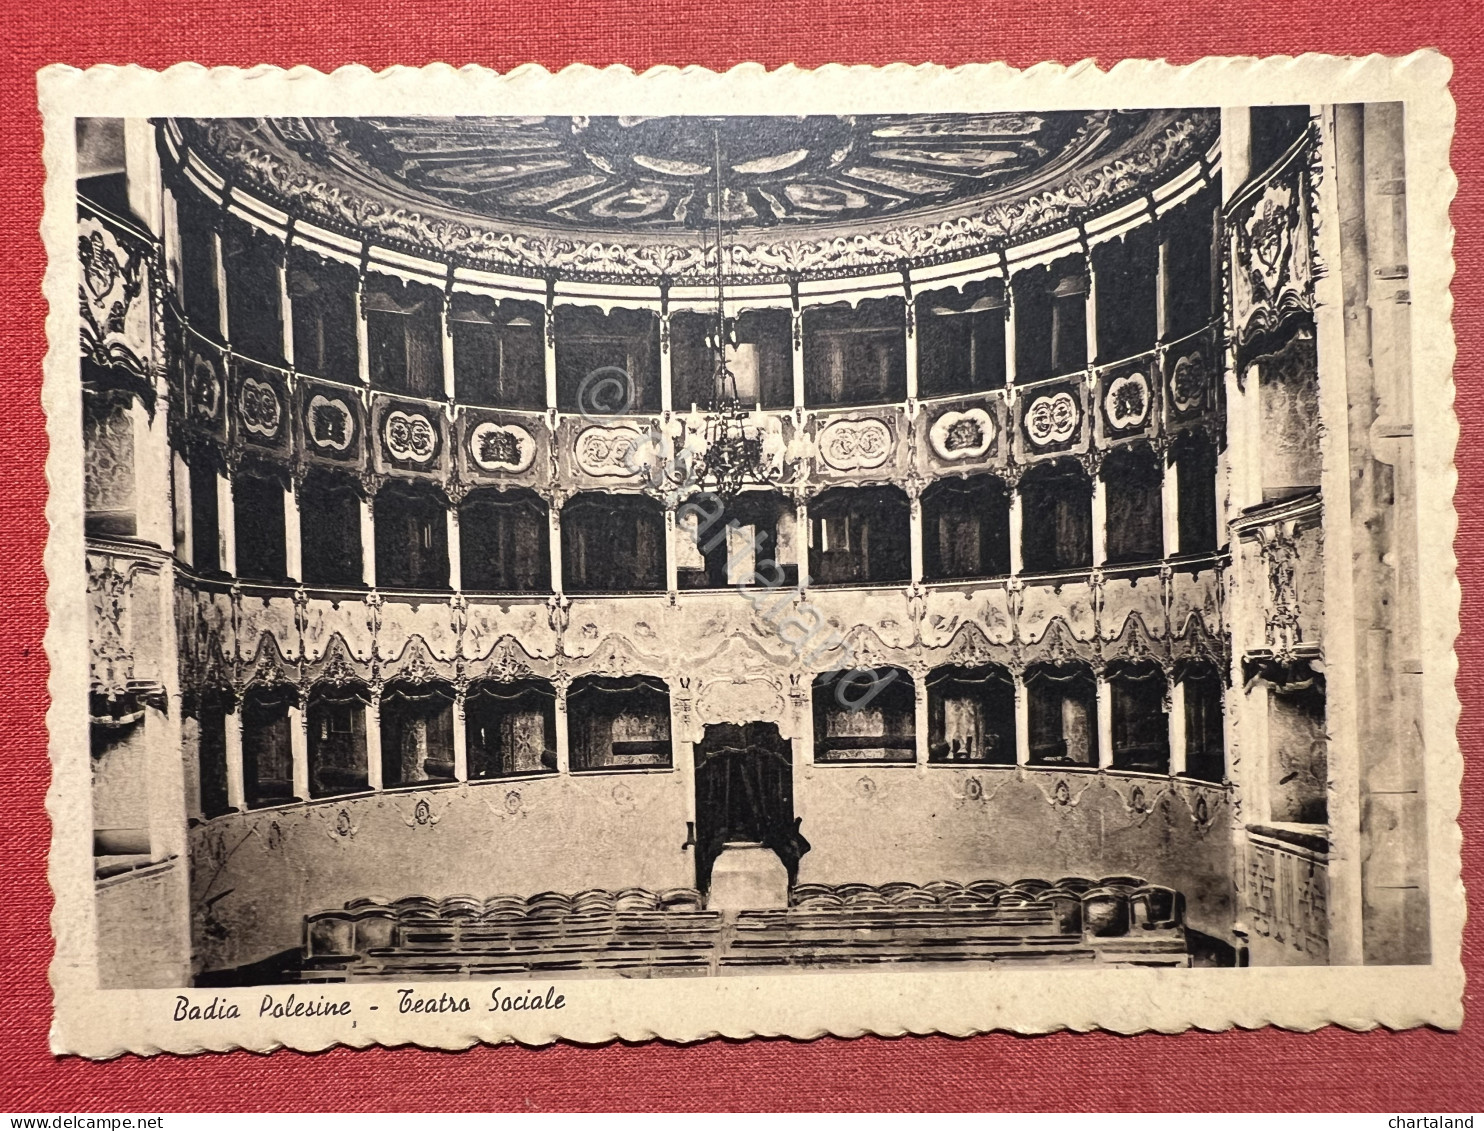 Cartolina - Badia Polesine ( Rovigo ) - Teatro Sociale - 1940 Ca. - Rovigo